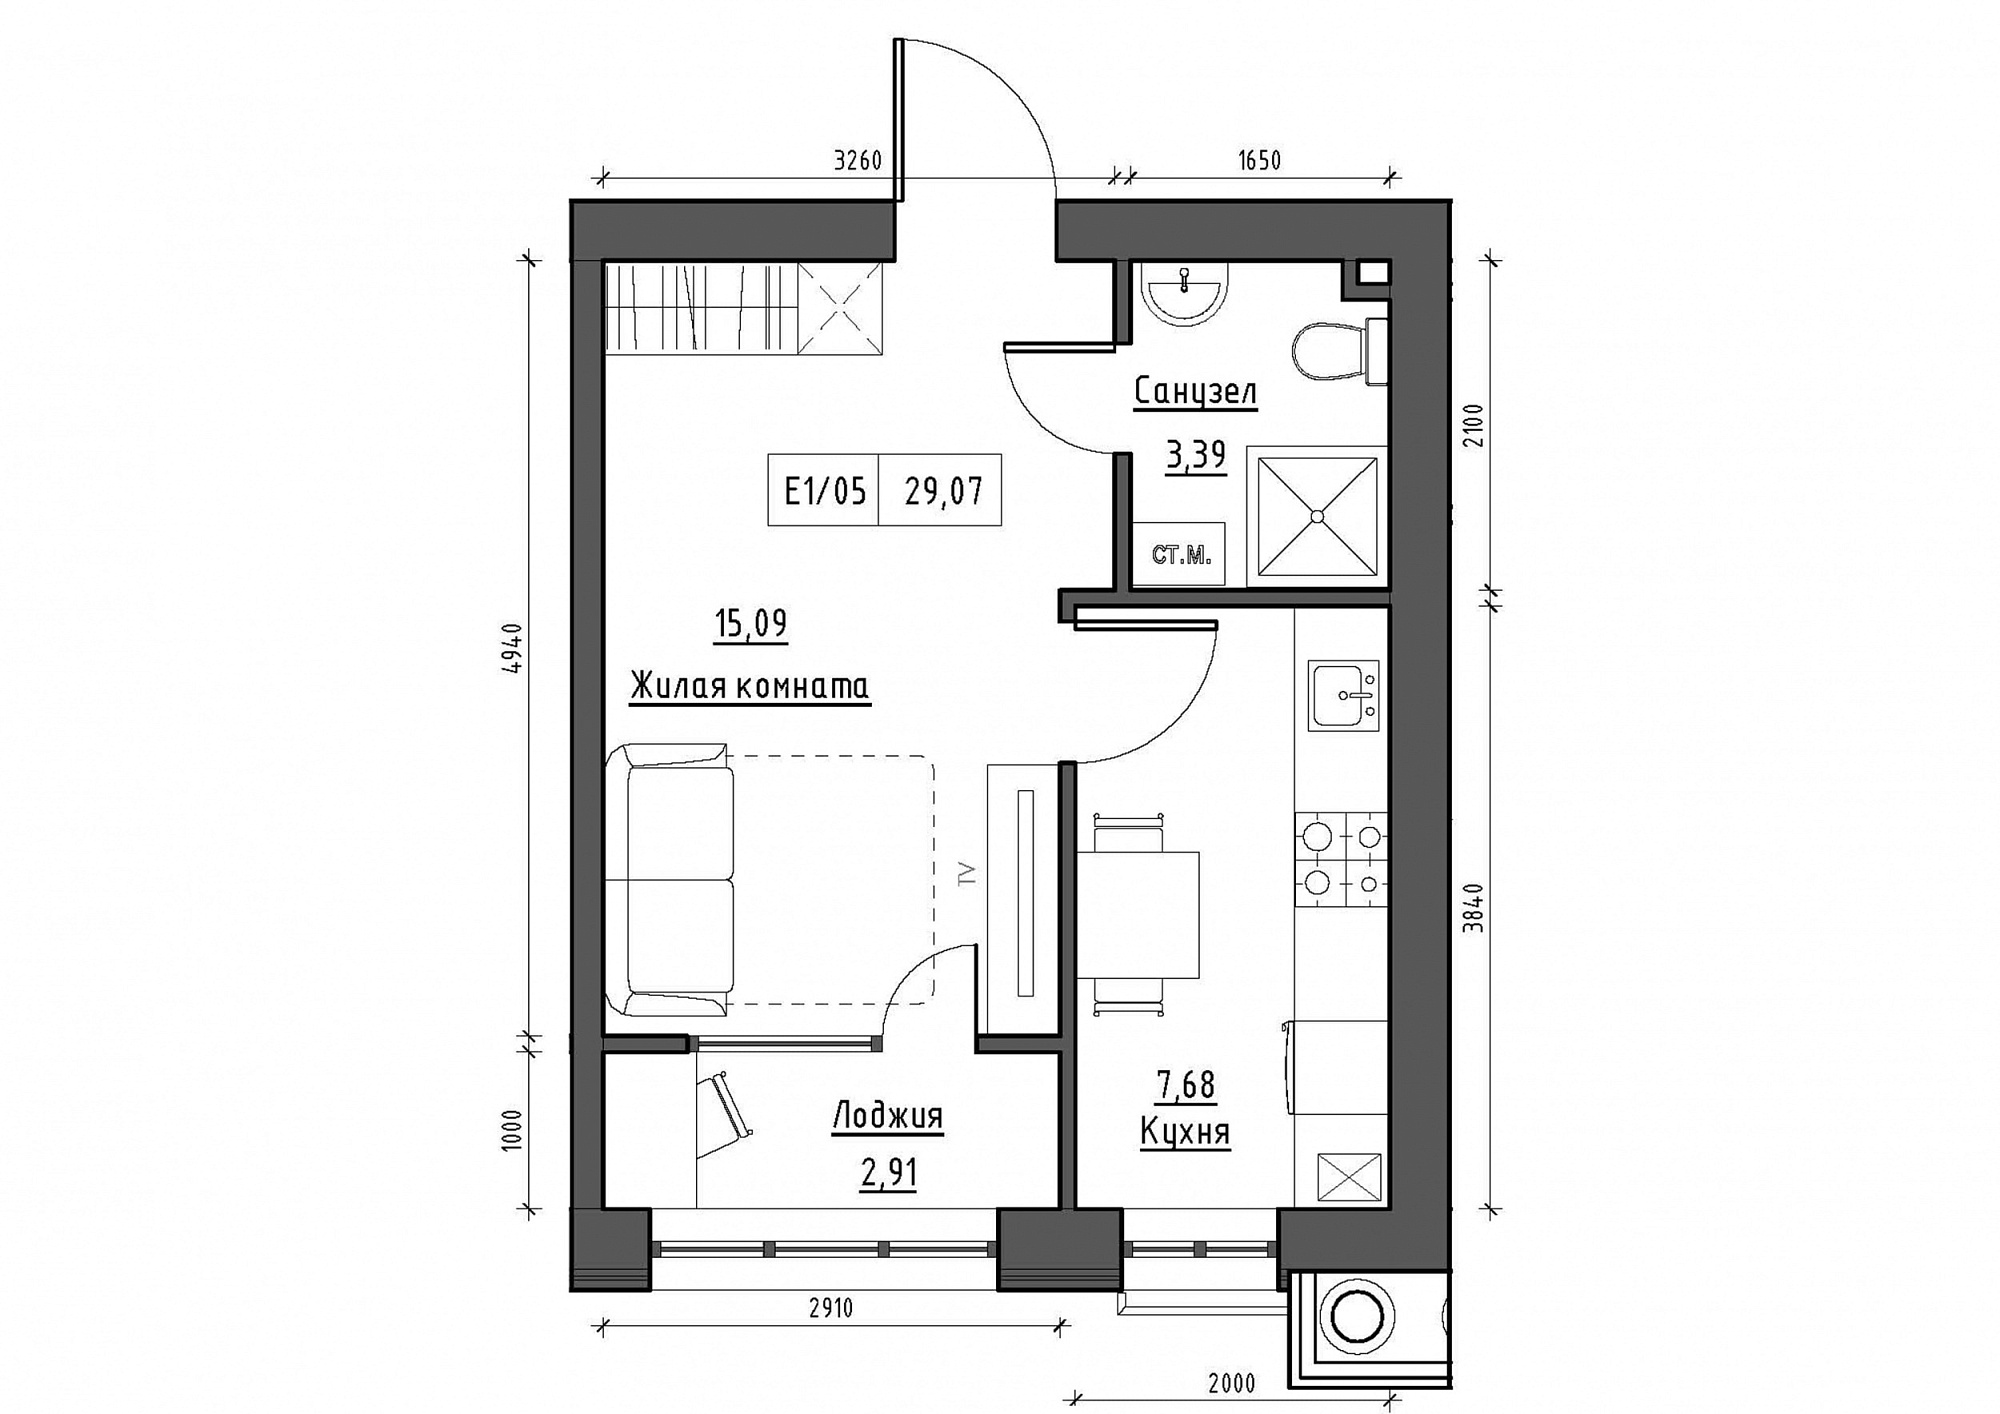 Планування 1-к квартира площею 29.07м2, KS-011-02/0009.